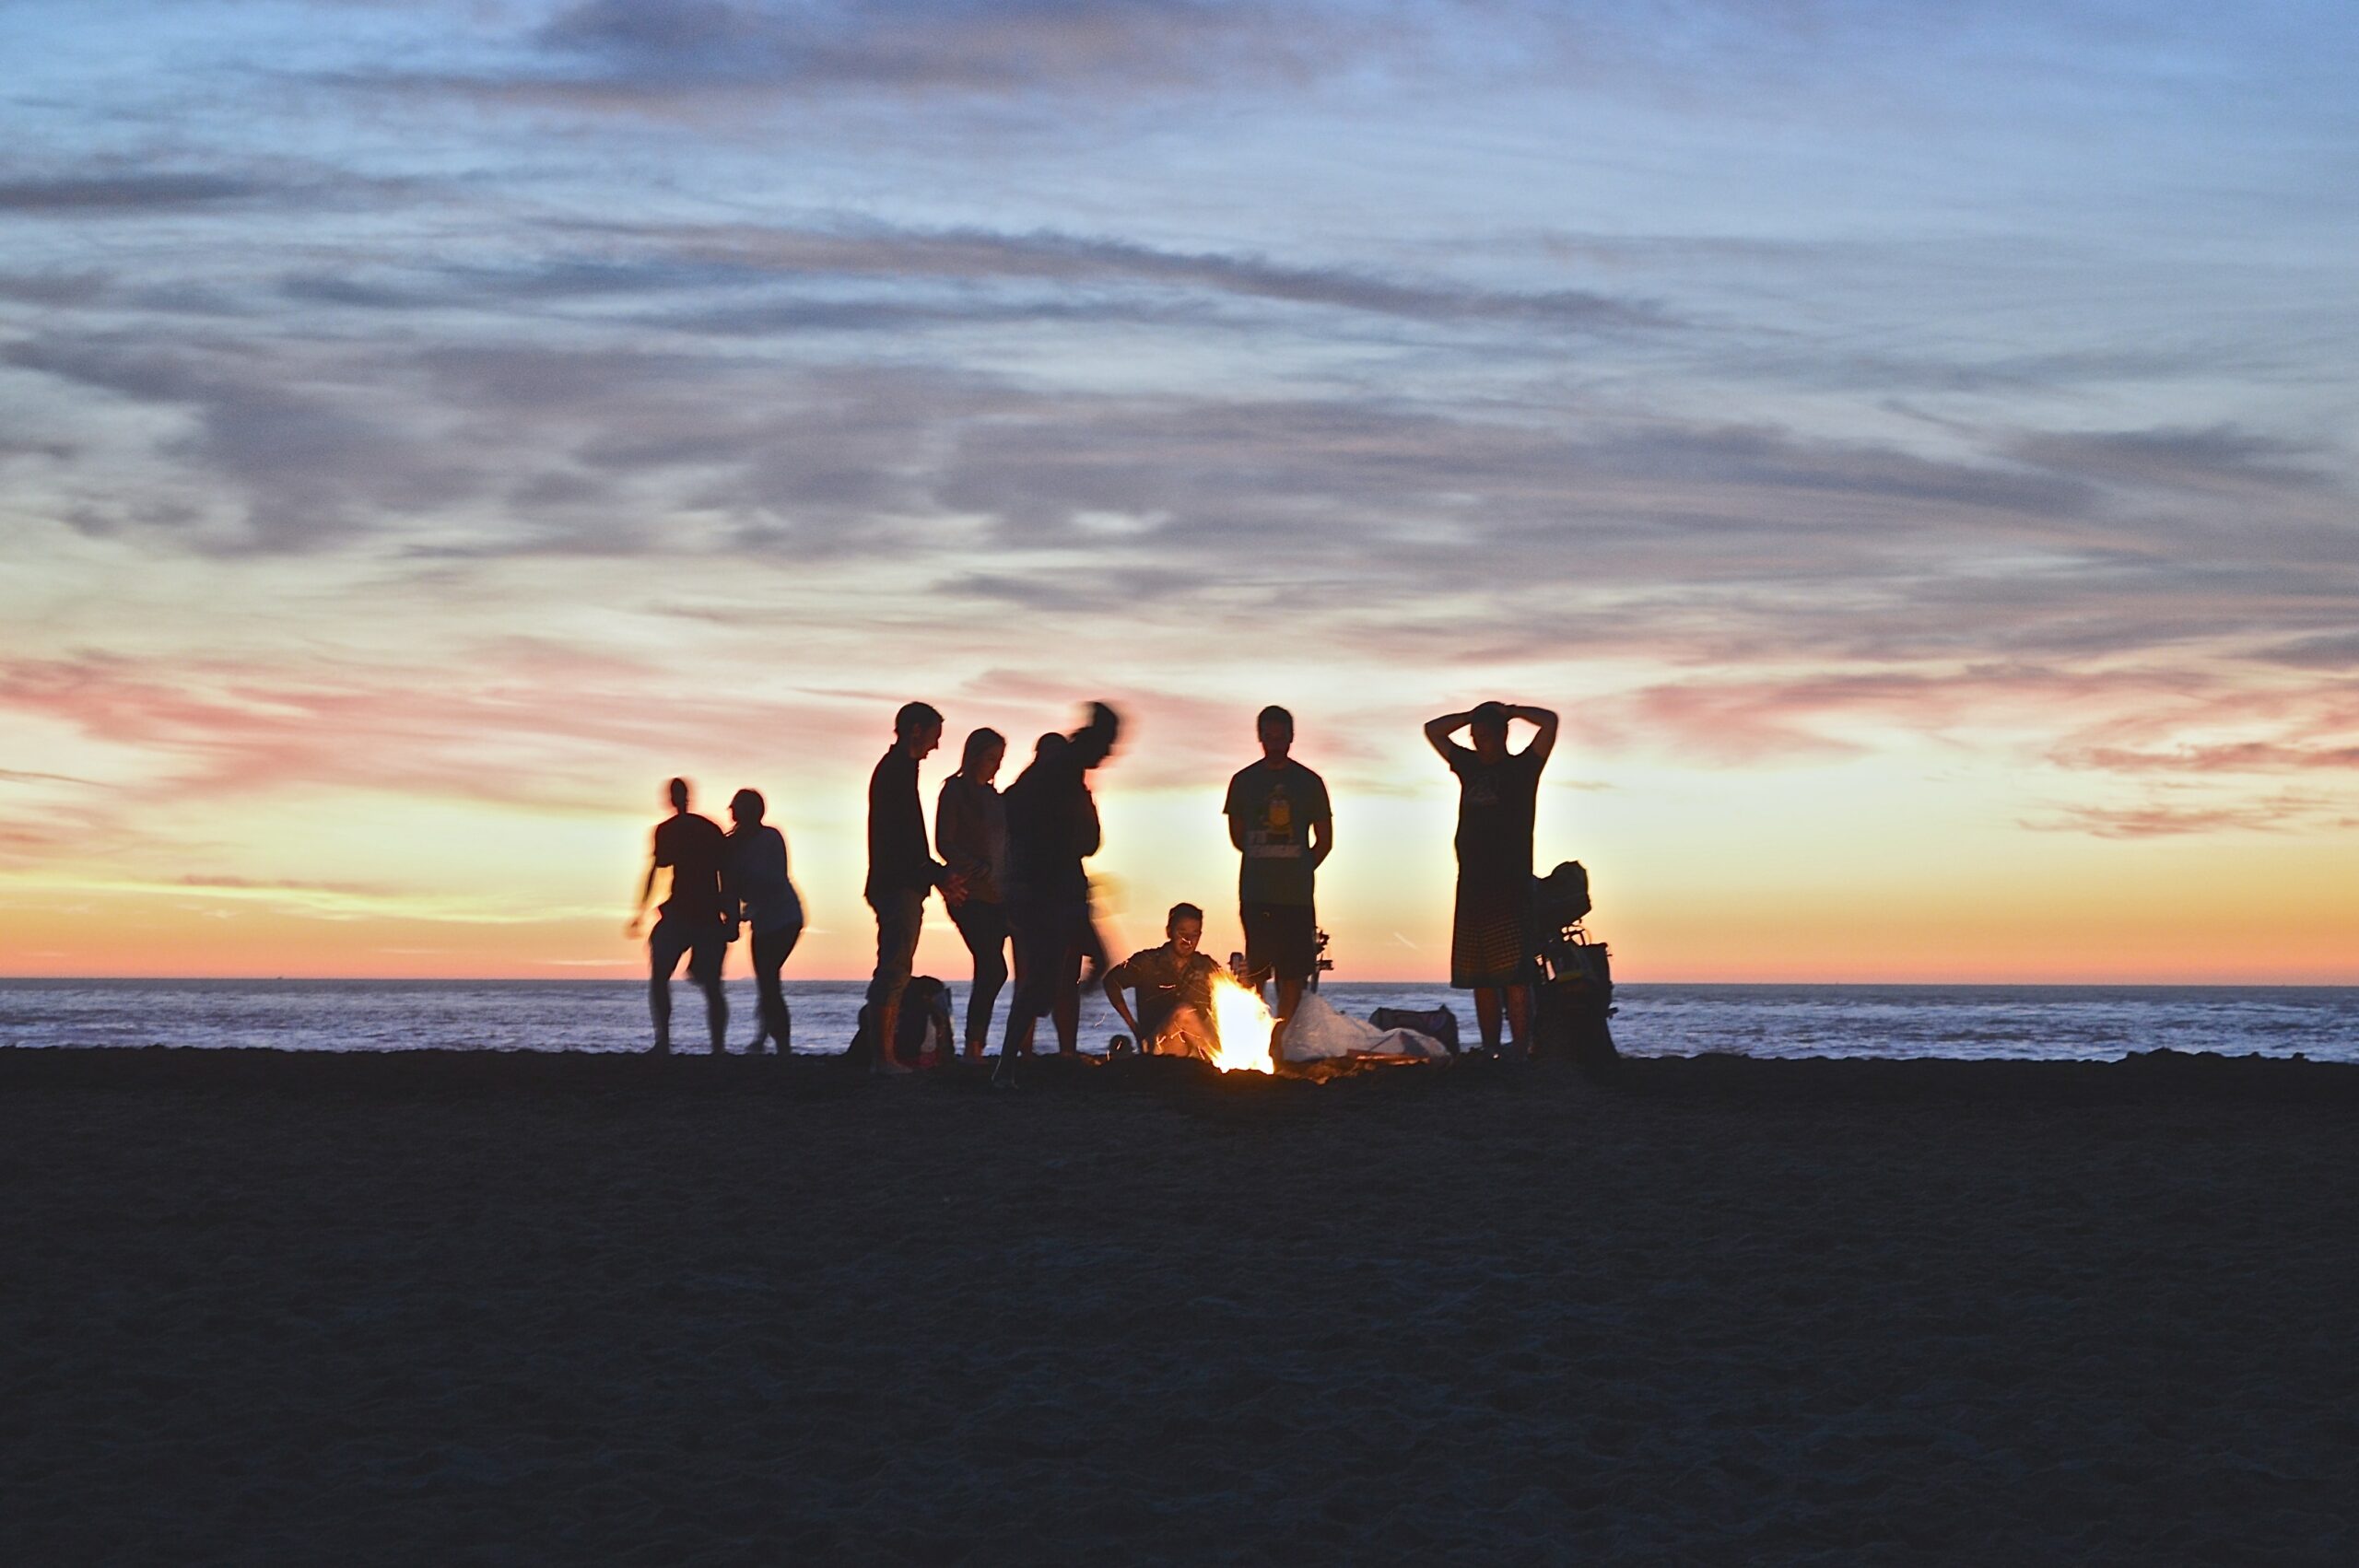 grupo de viajantes à beira de fogueira na praia ao por do sol